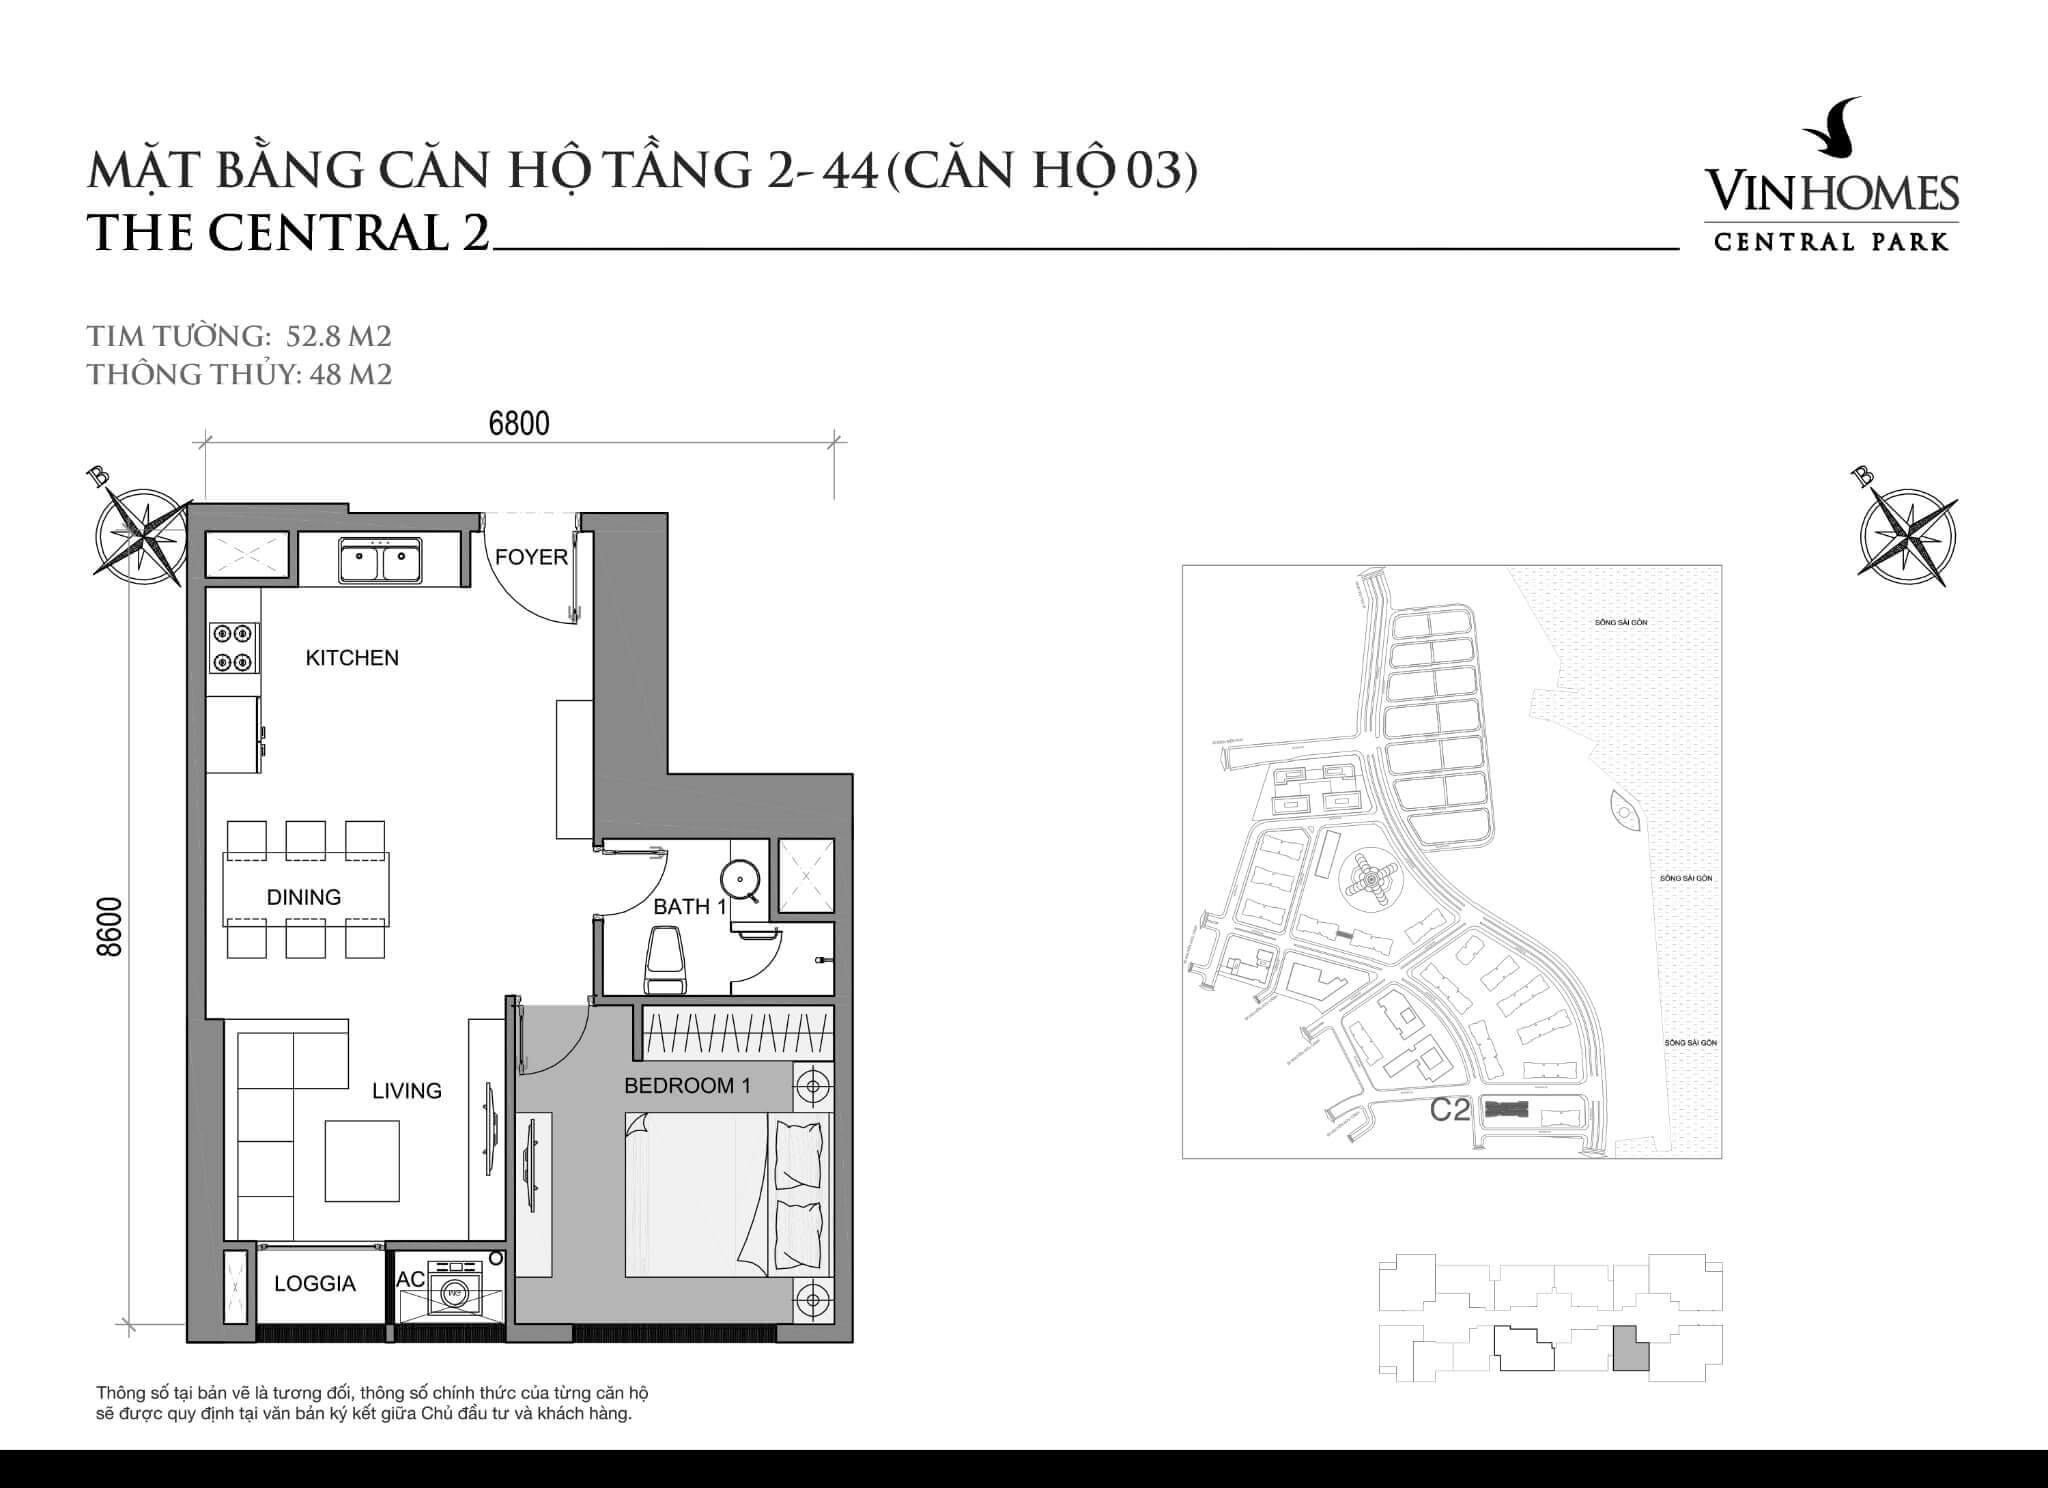 layout căn hộ số 3 tầng 2-44 Central 2